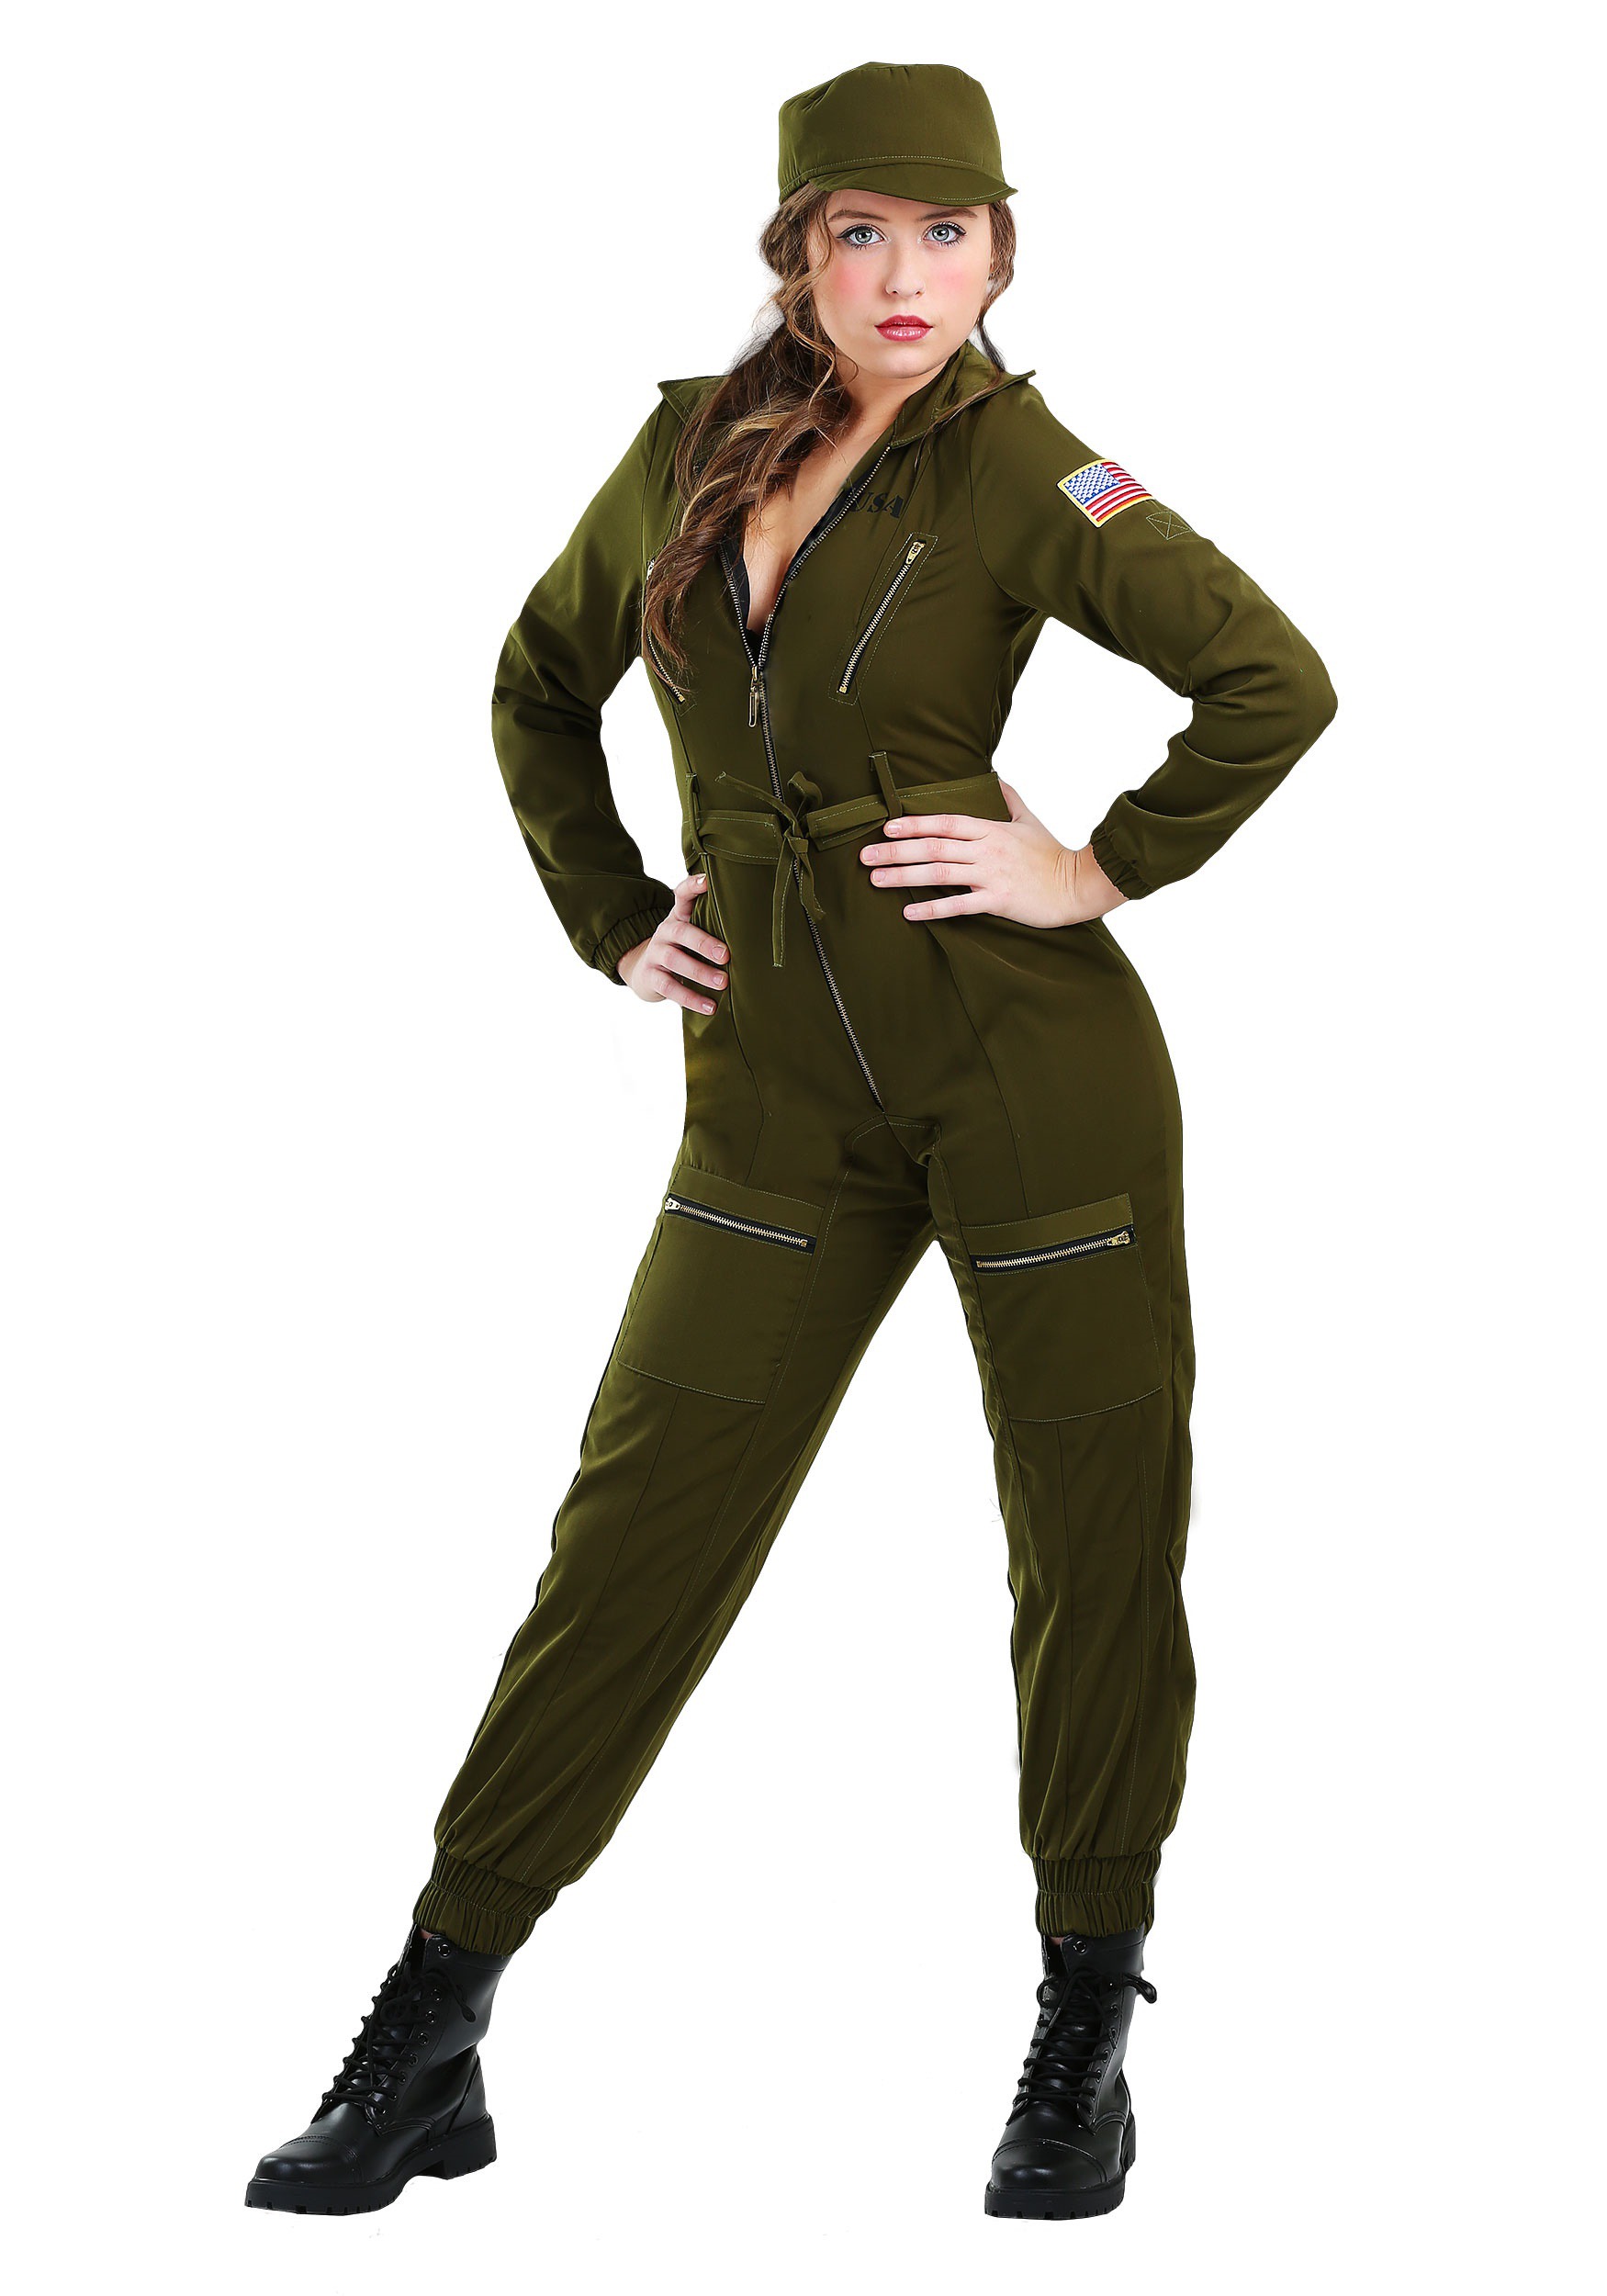 Photos - Fancy Dress Fancy FUN Costumes Women's Plus Size Army Flightsuit  Dress Costume Green 